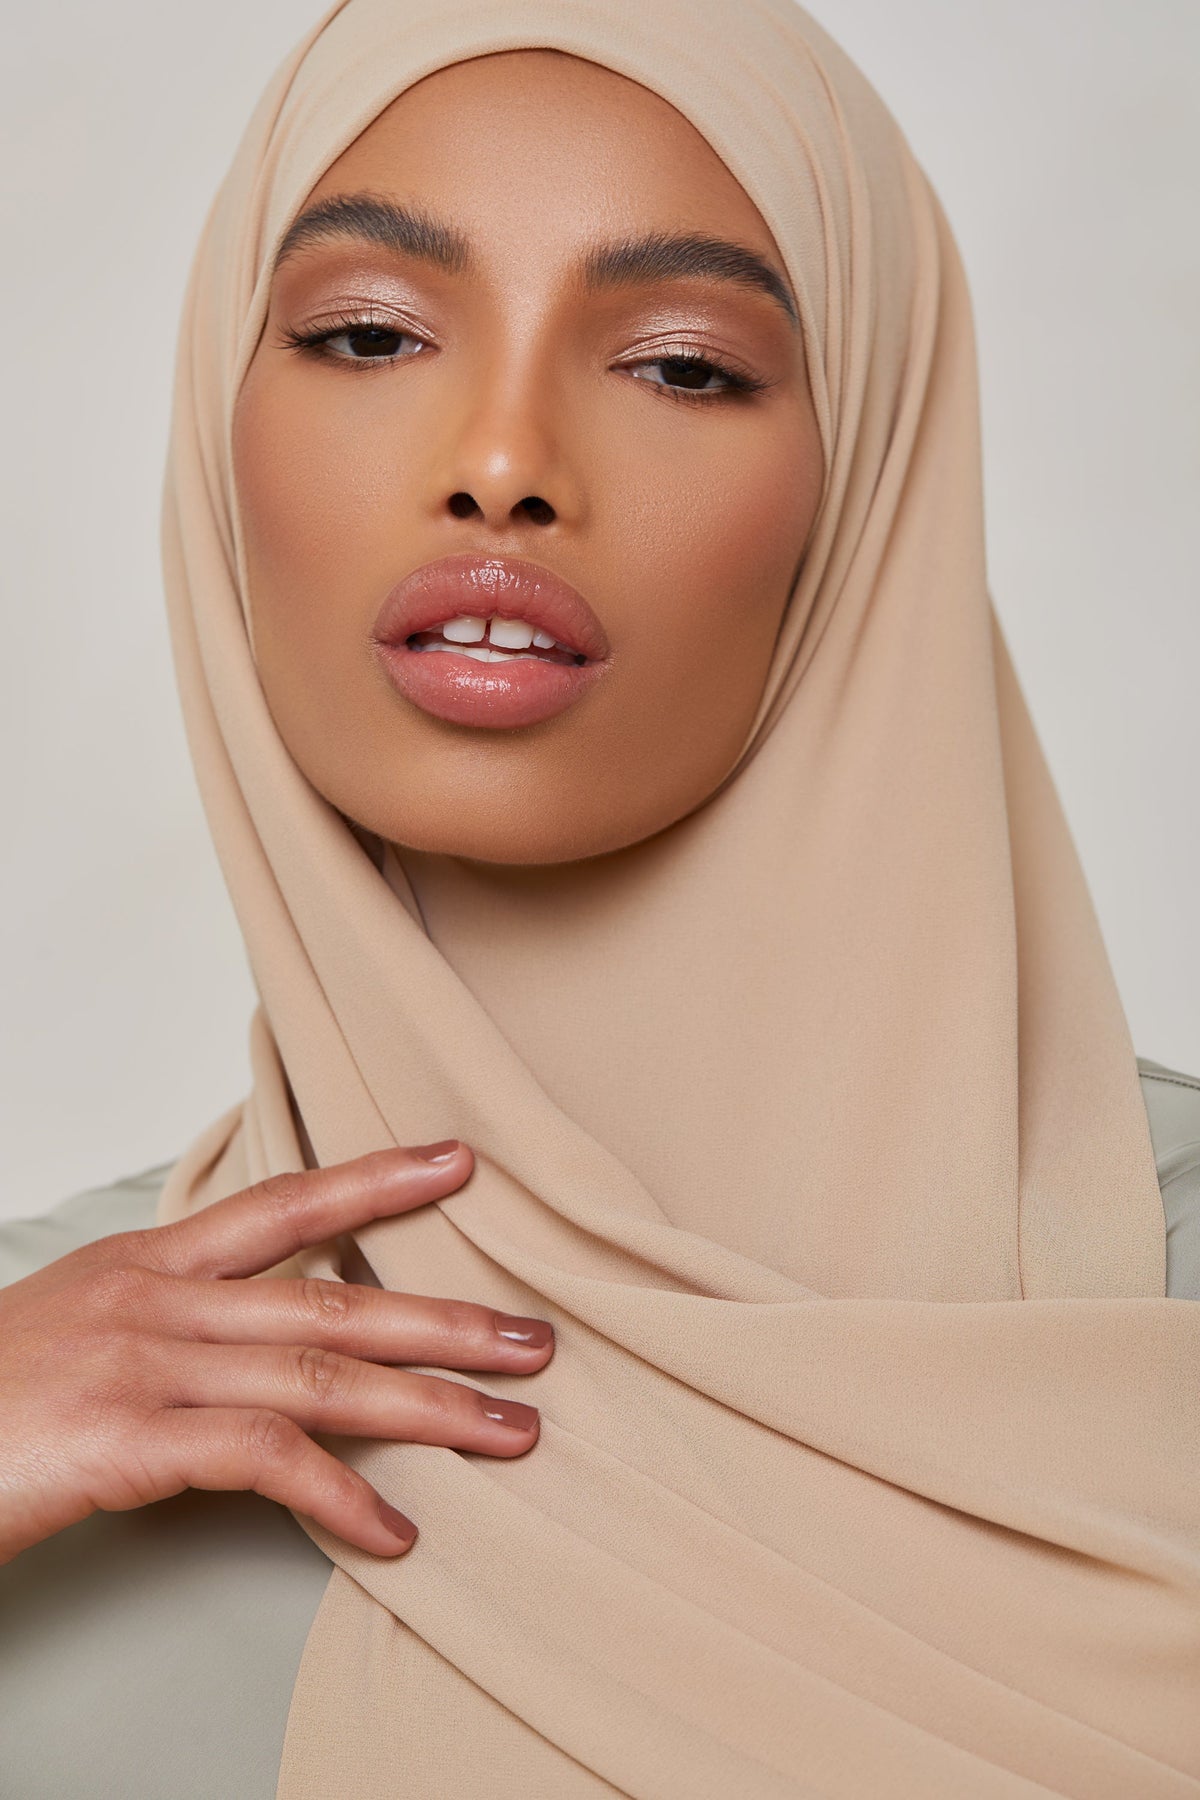 Essential Chiffon Hijab - Barely Beige Scarves & Shawls epschoolboard 